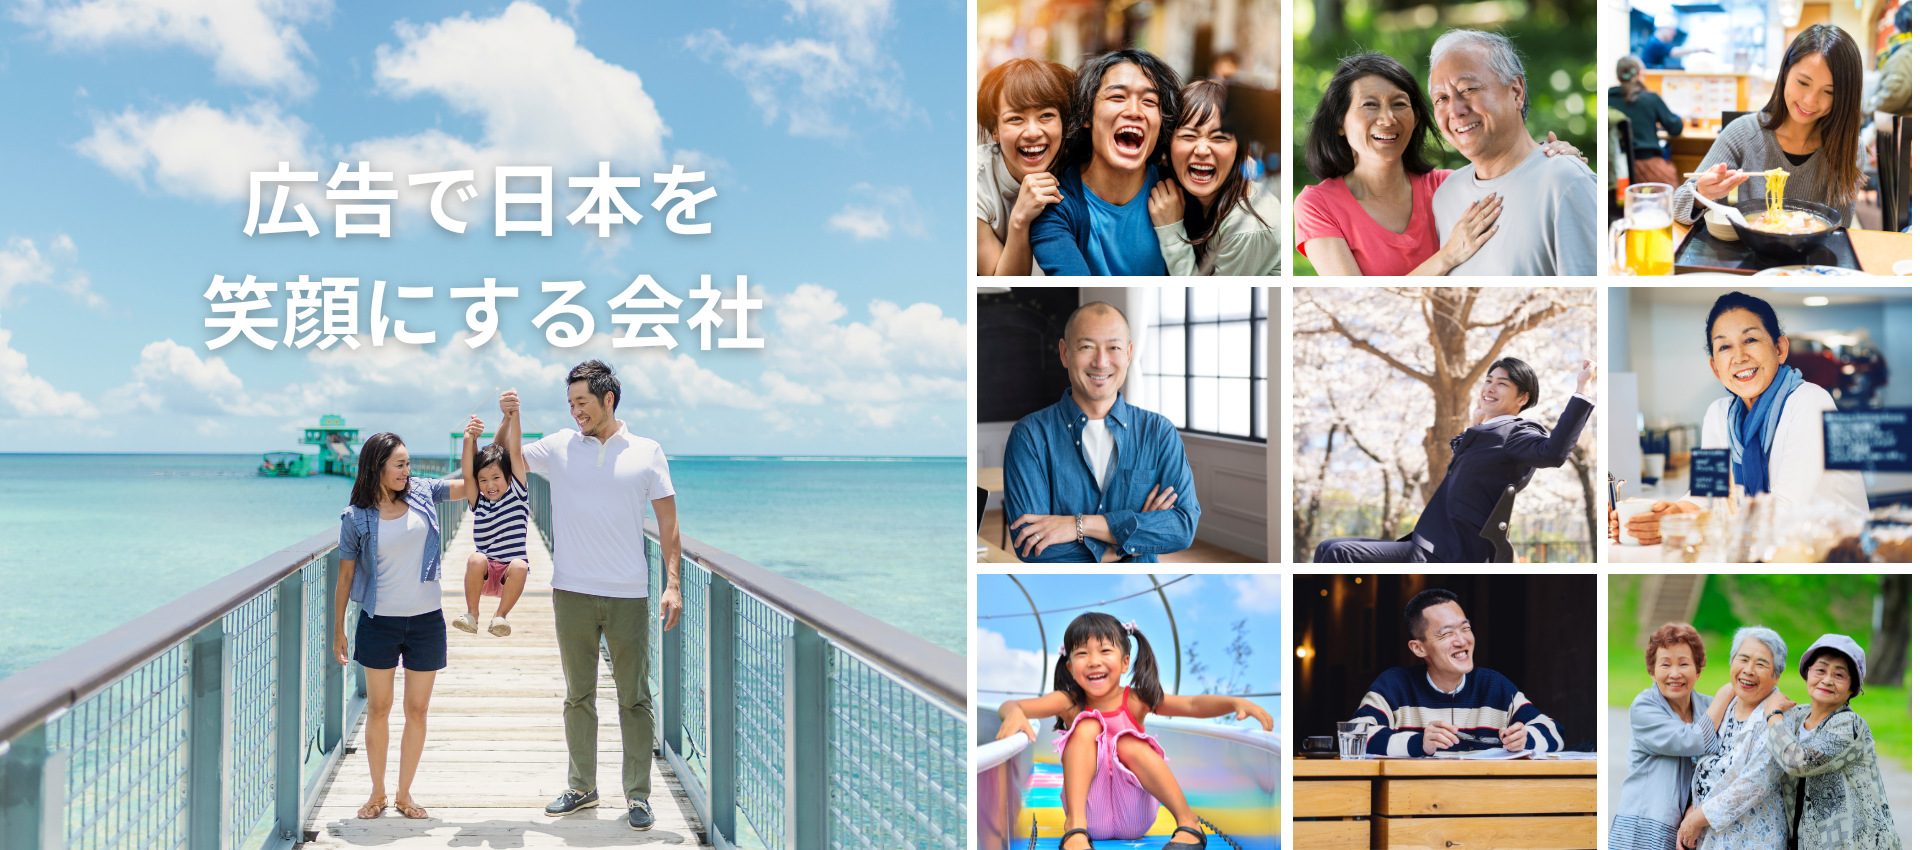 広告で日本を笑顔にする会社